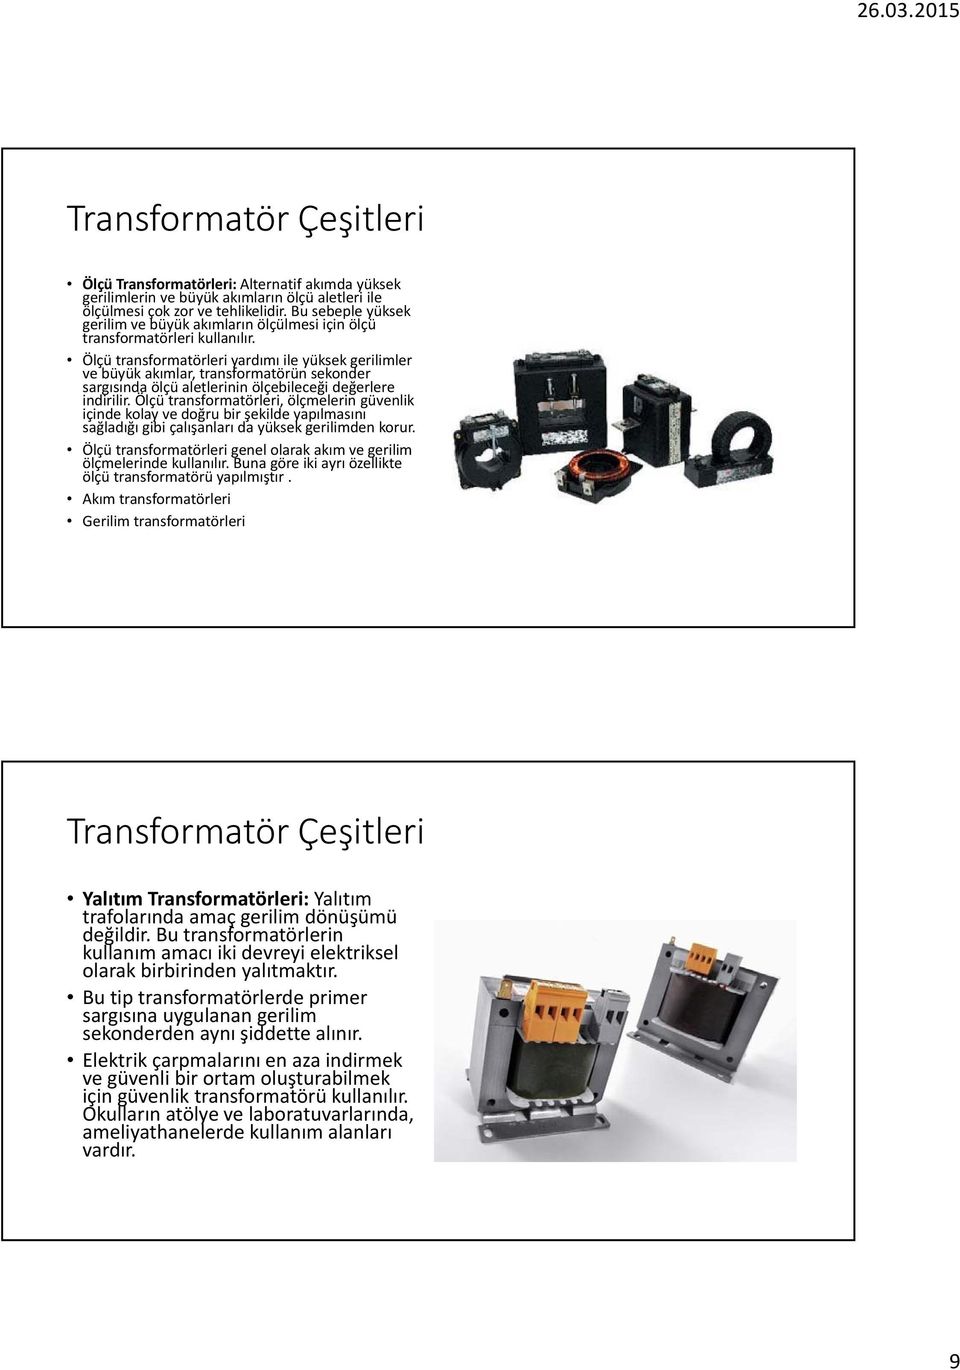 Ölçü transformatörleri yardımı ile yüksek gerilimler ve büyük akımlar, transformatörün sekonder sargısında ölçü aletlerinin ölçebileceği değerlere indirilir.